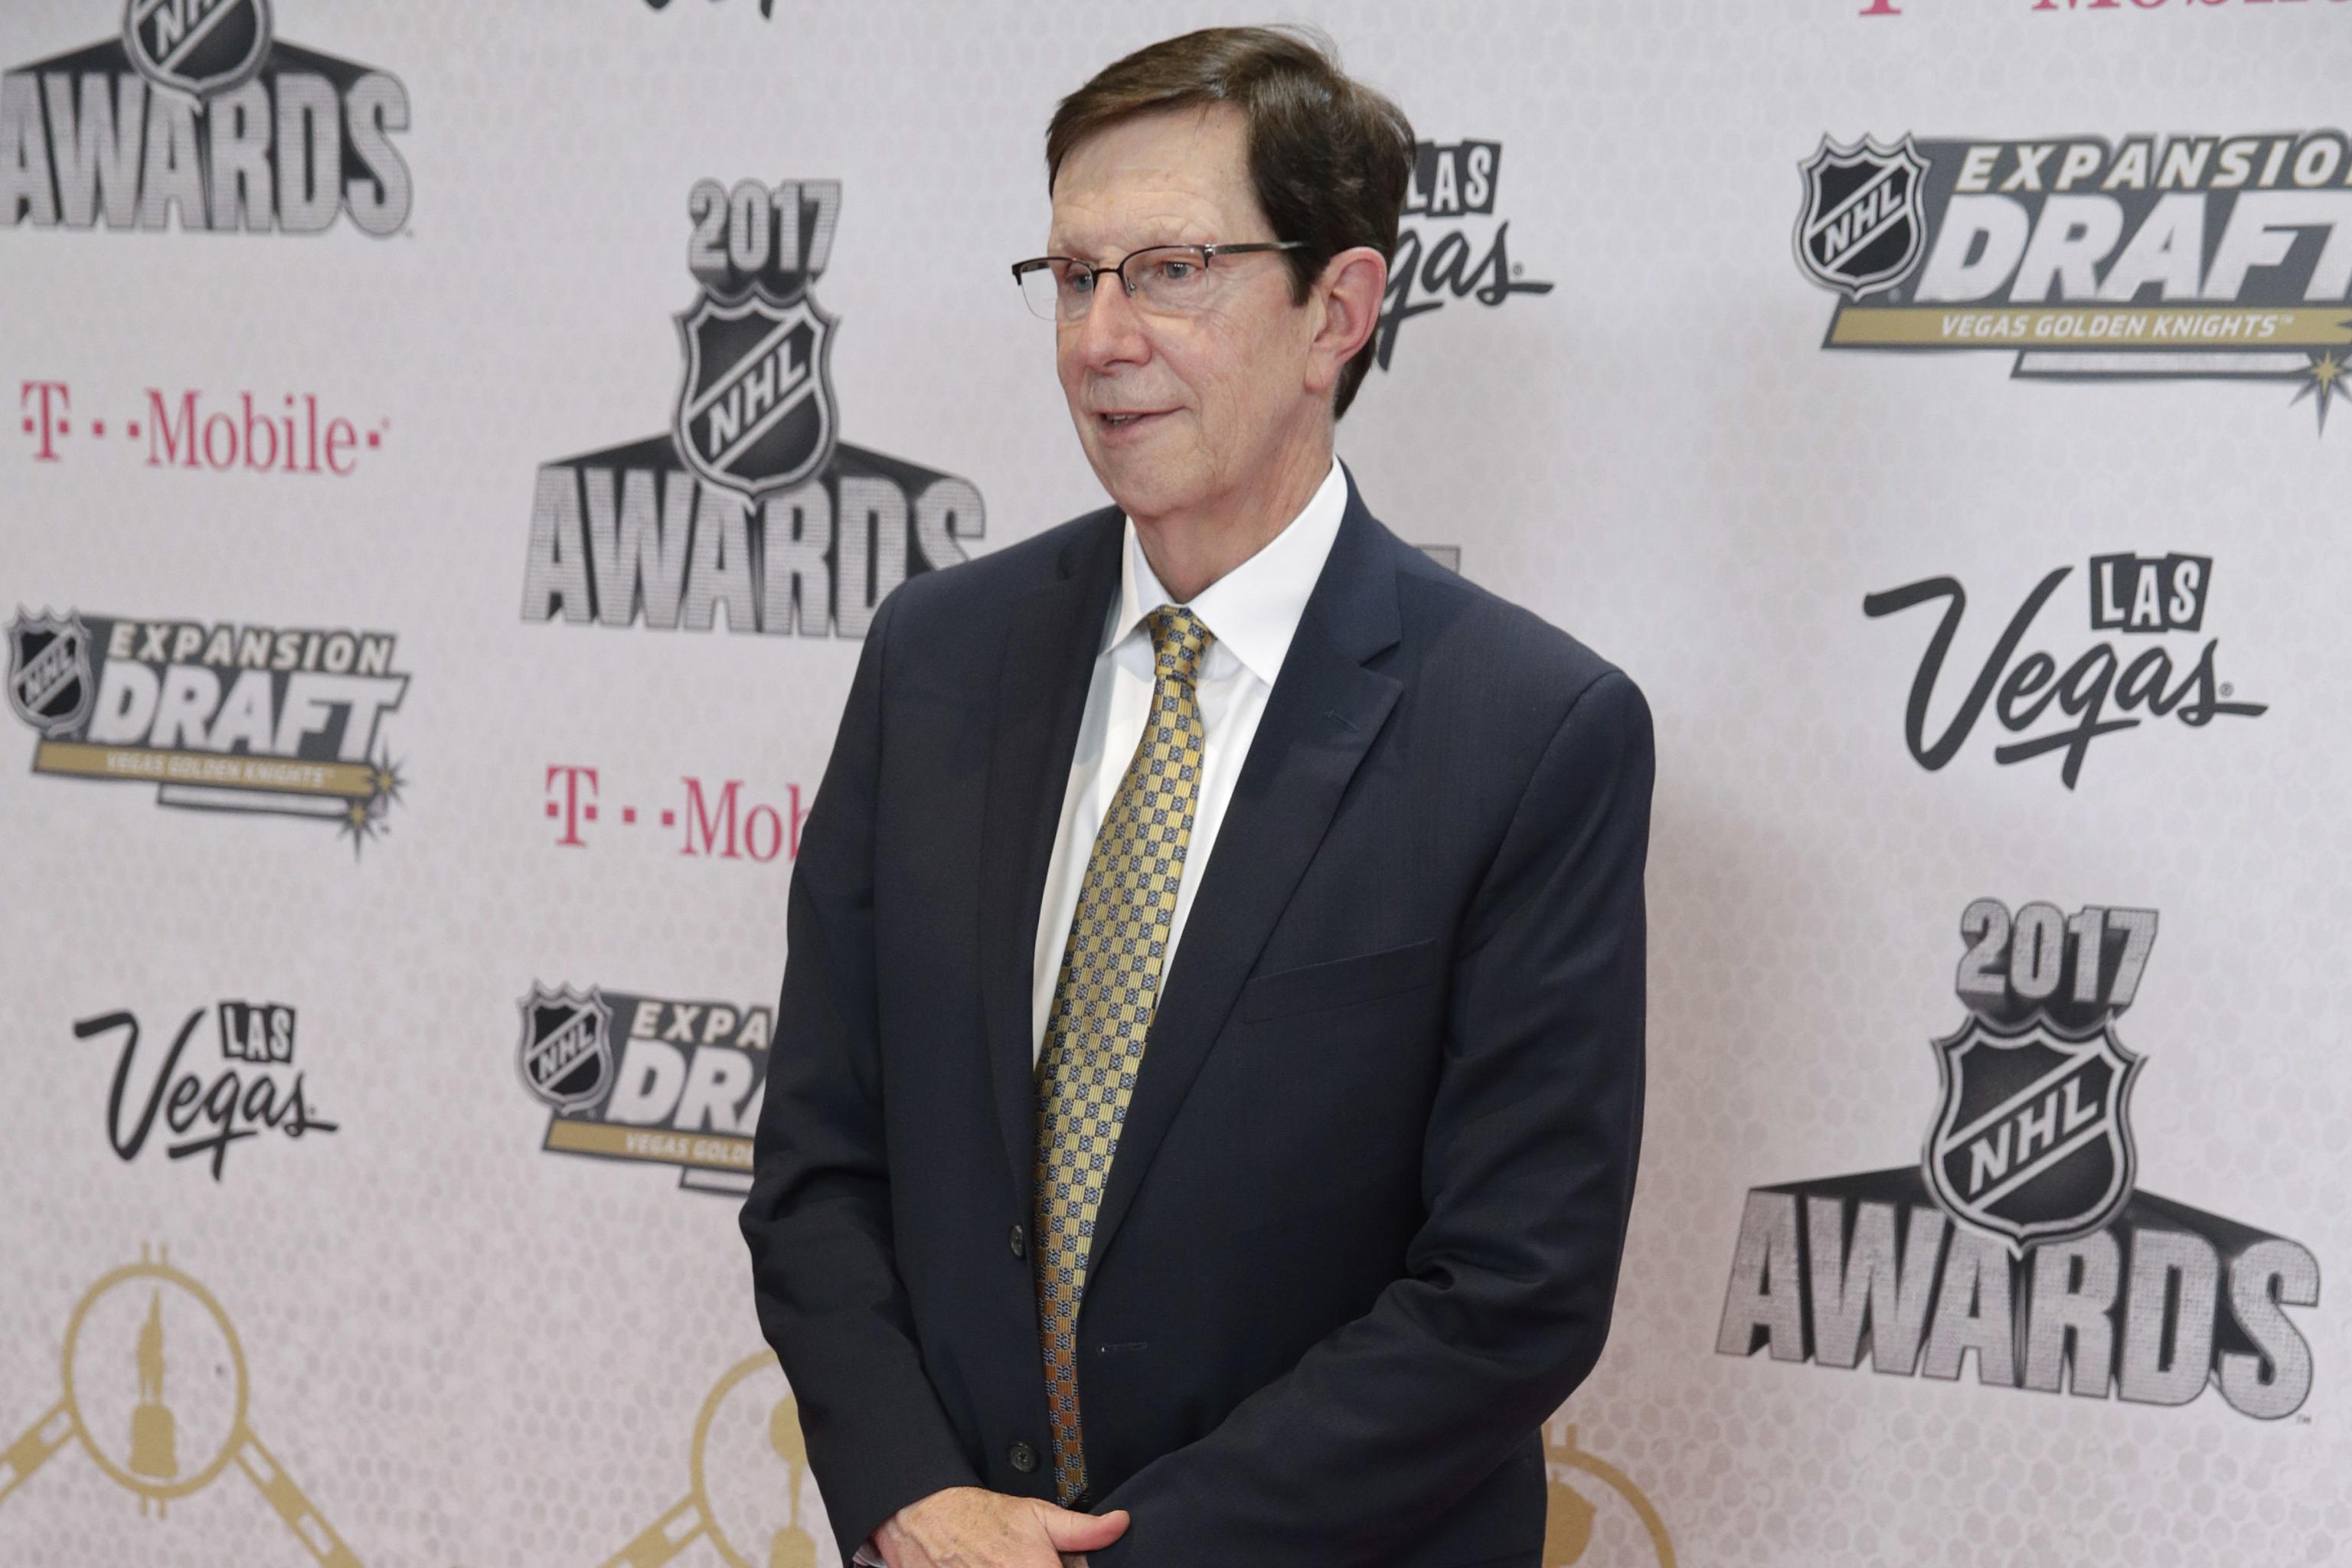 NHL teams honor David Poile in final draft as Predators GM